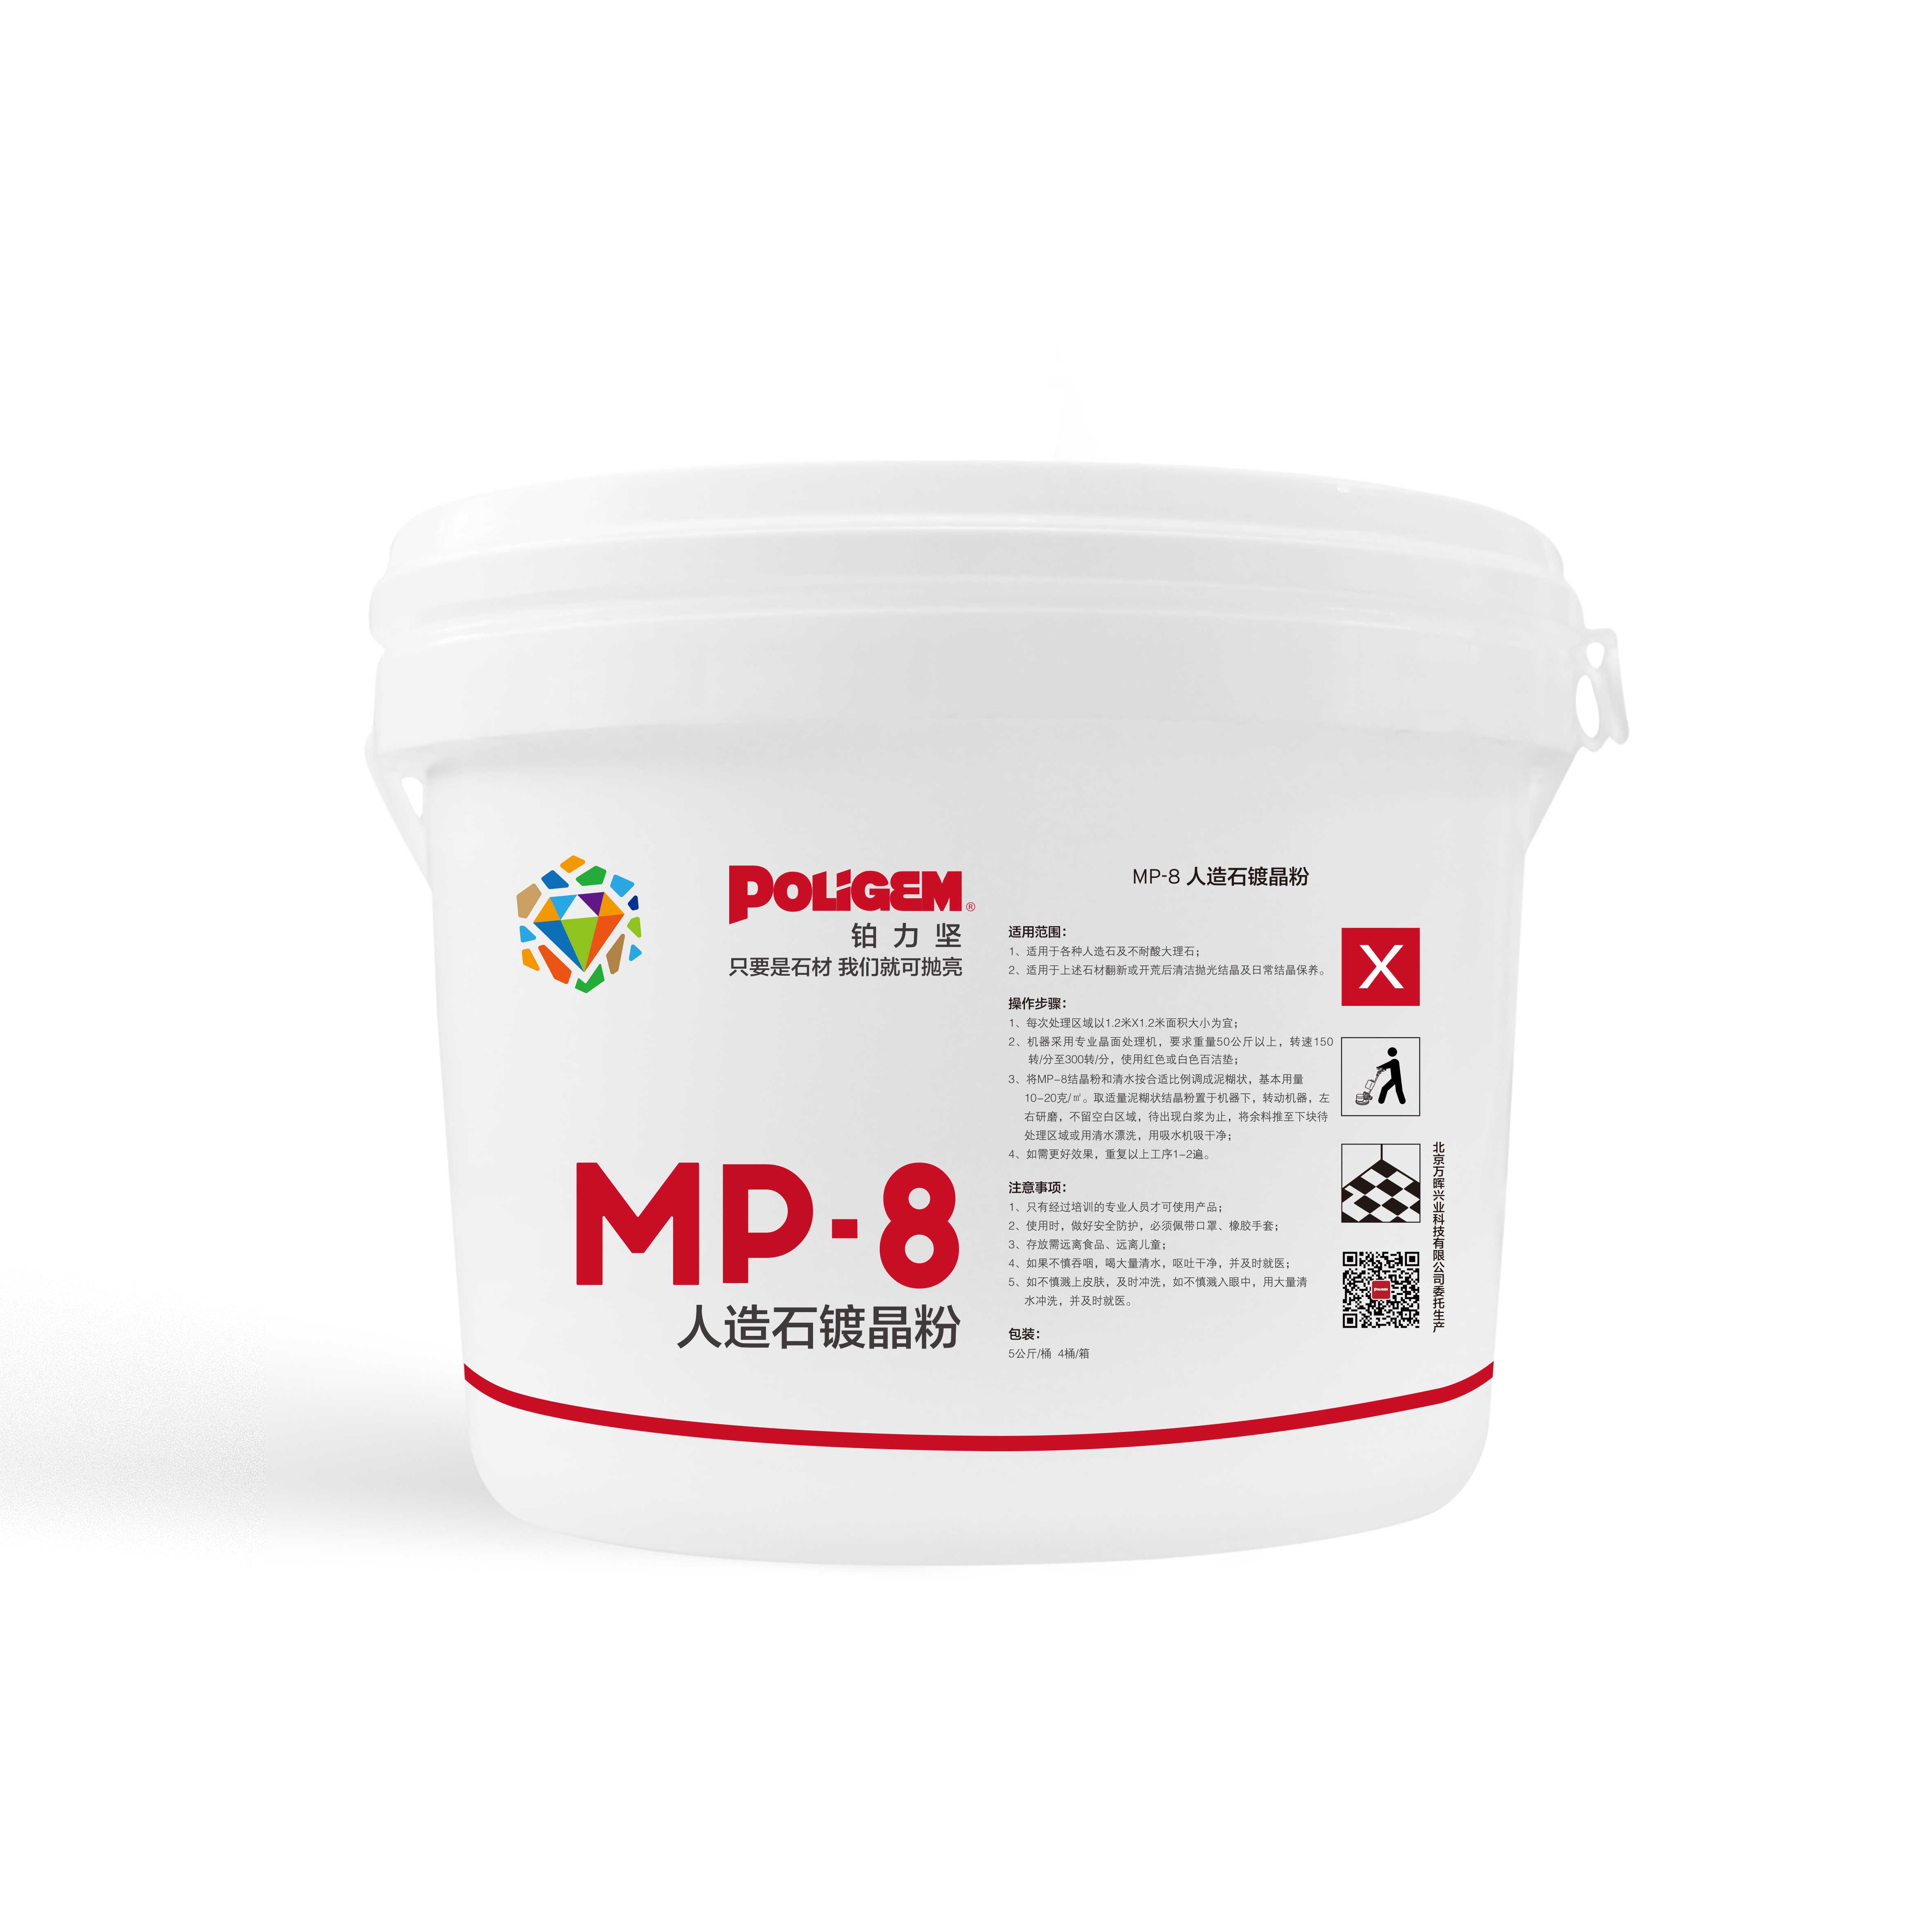 MP-7大理石抛光结晶粉保养粉